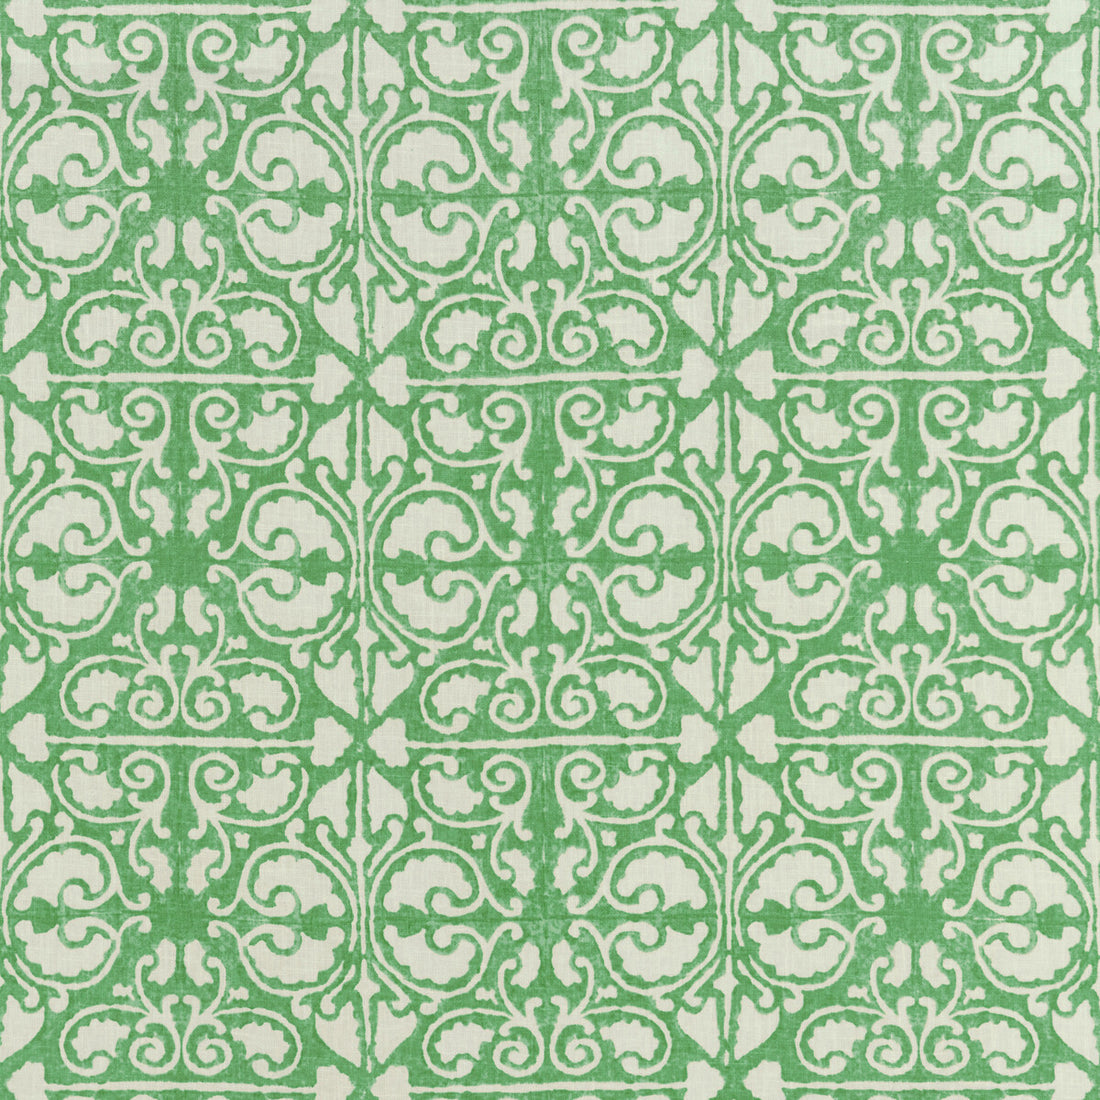 Kravet Basics fabric in agra tile-3 color - pattern AGRA TILE.3.0 - by Kravet Basics in the L&